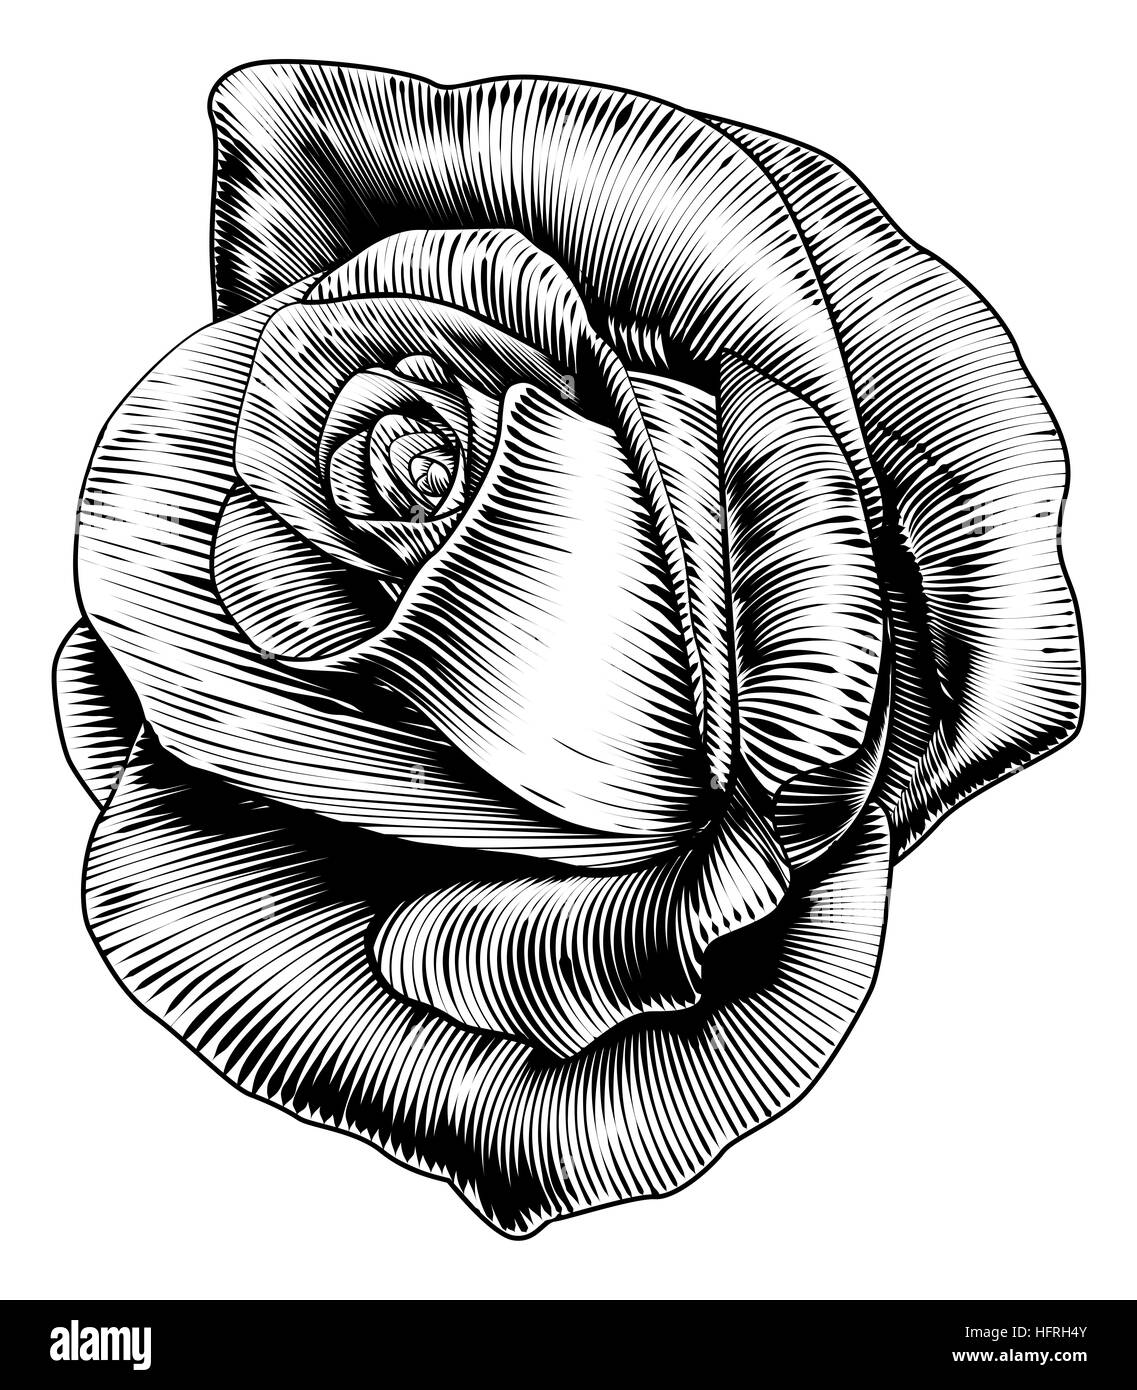 Une seule fleur dans un vintage retro style gravure gravure sur bois gravé Banque D'Images